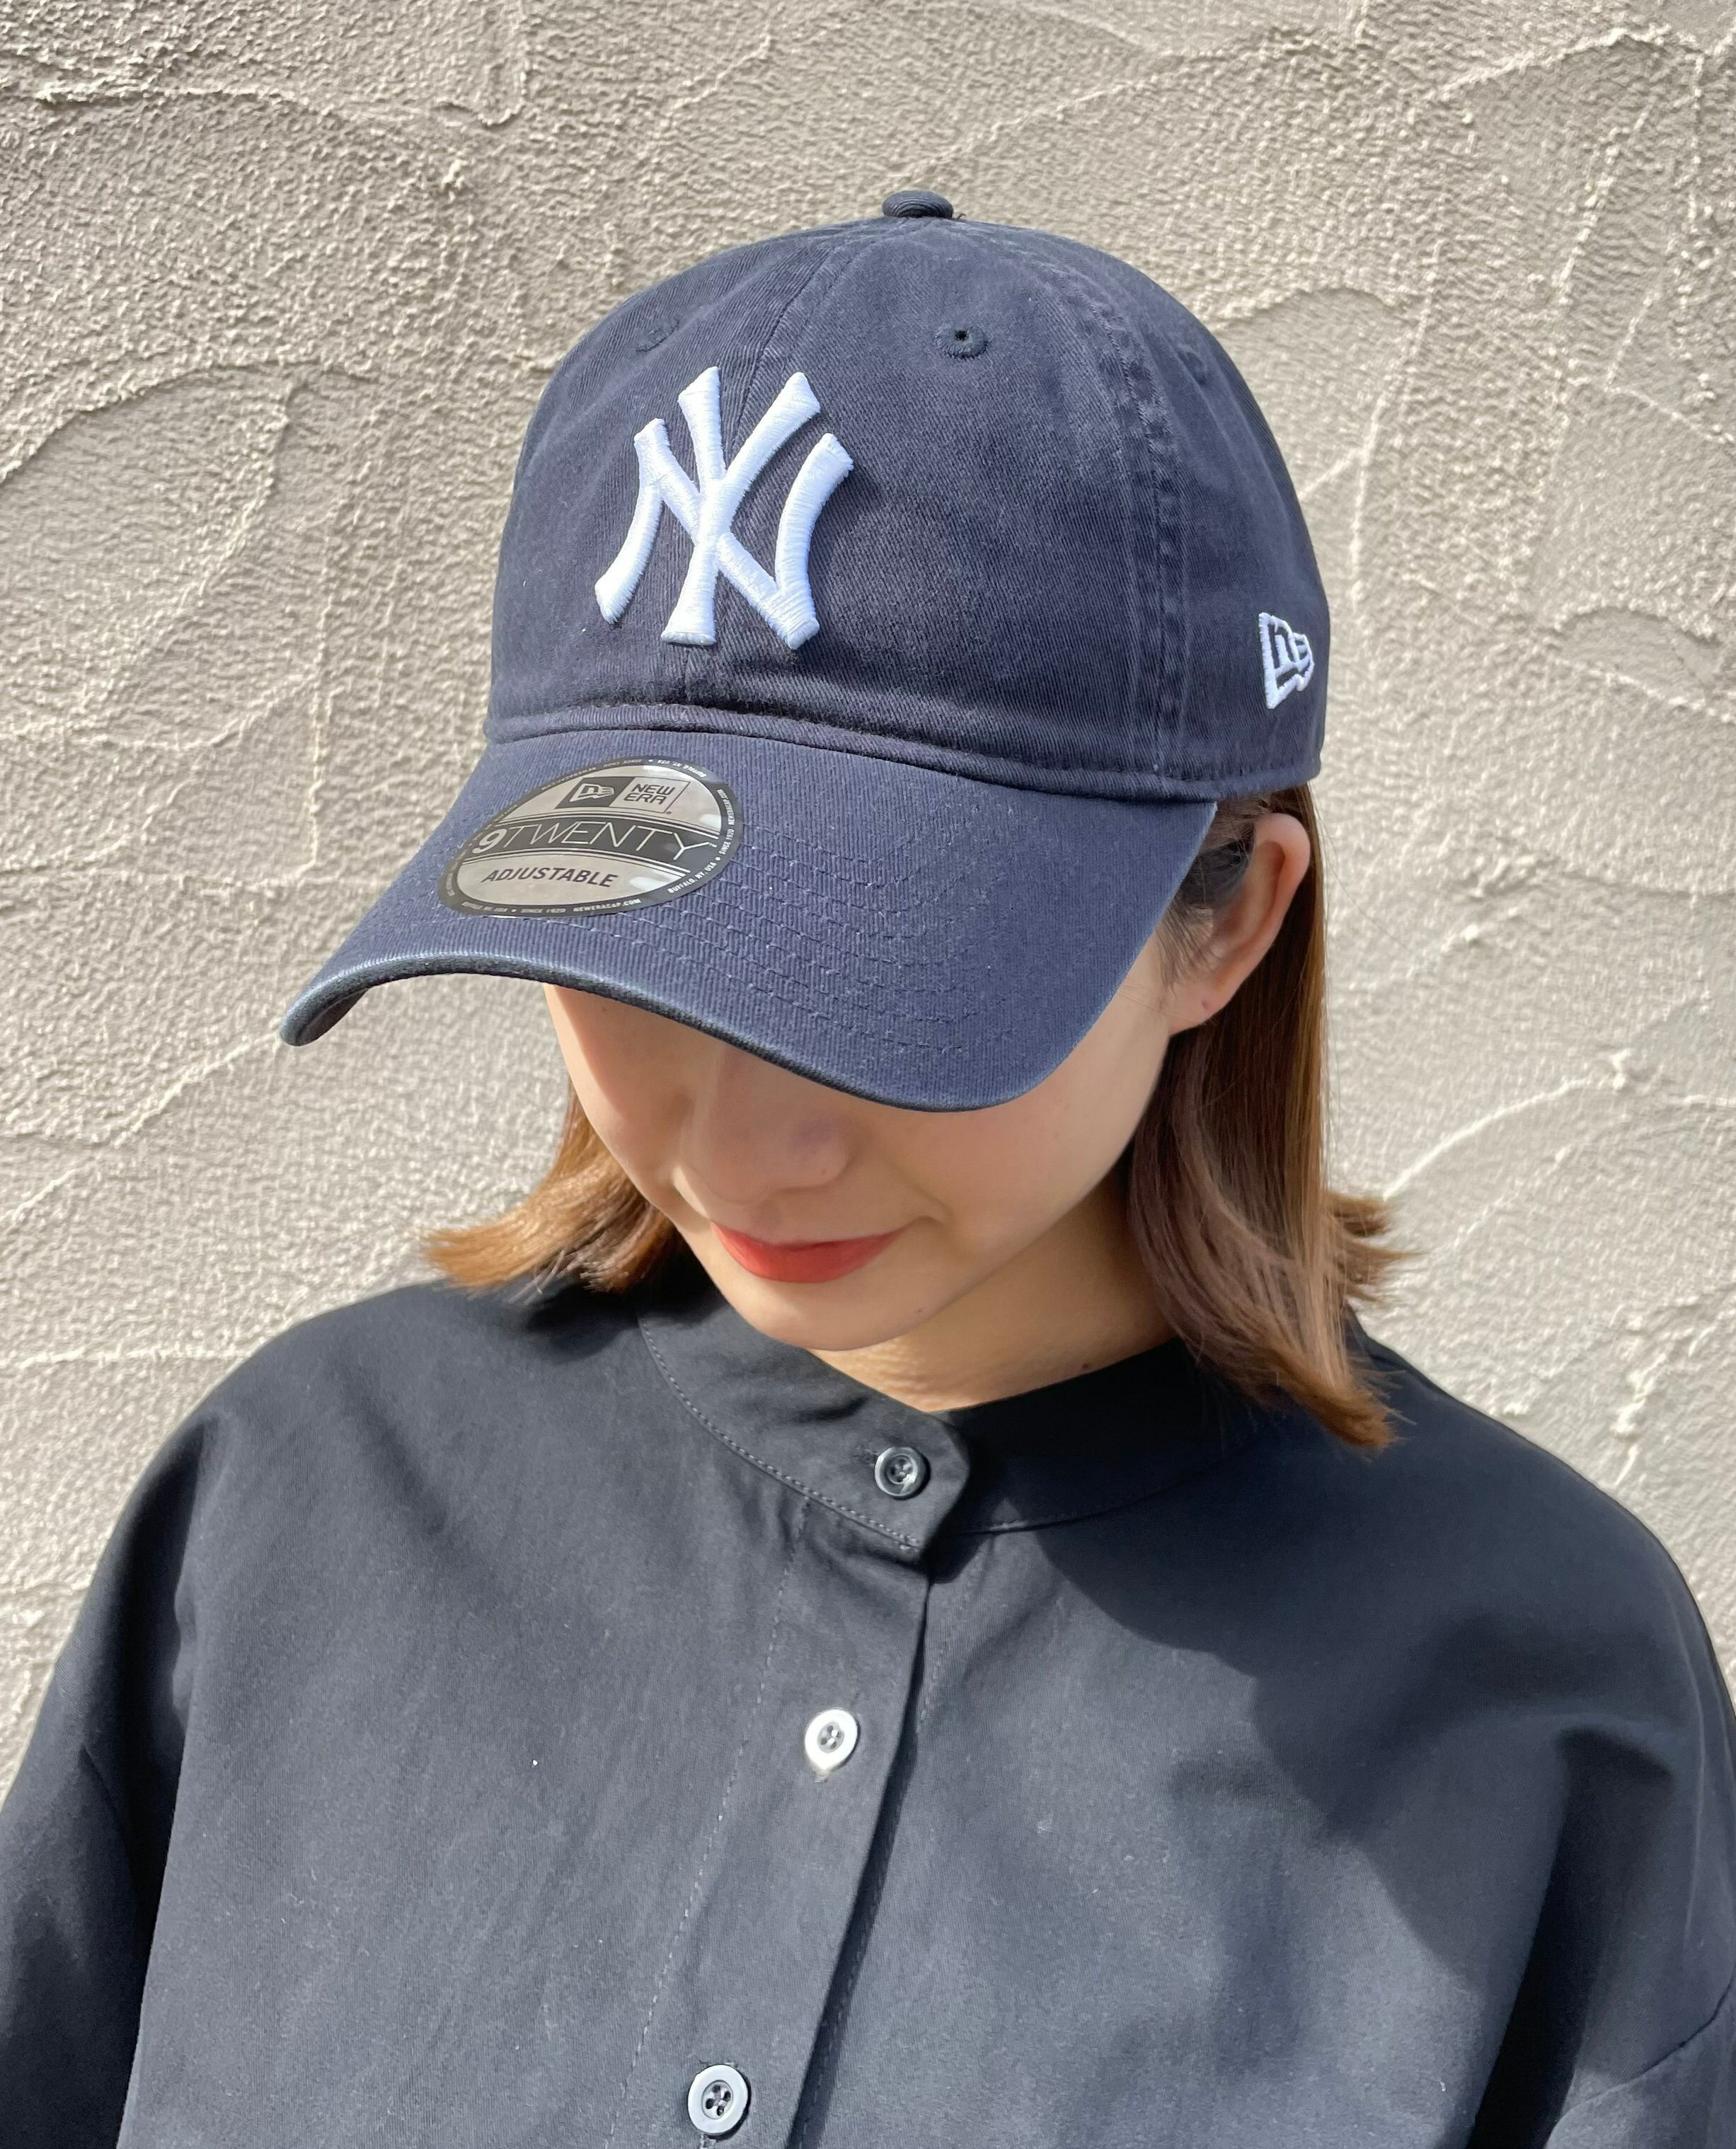 ニューエラ YEVS 【NEW ERA】MLB イーブス 帽子 キャップ【送料無料】